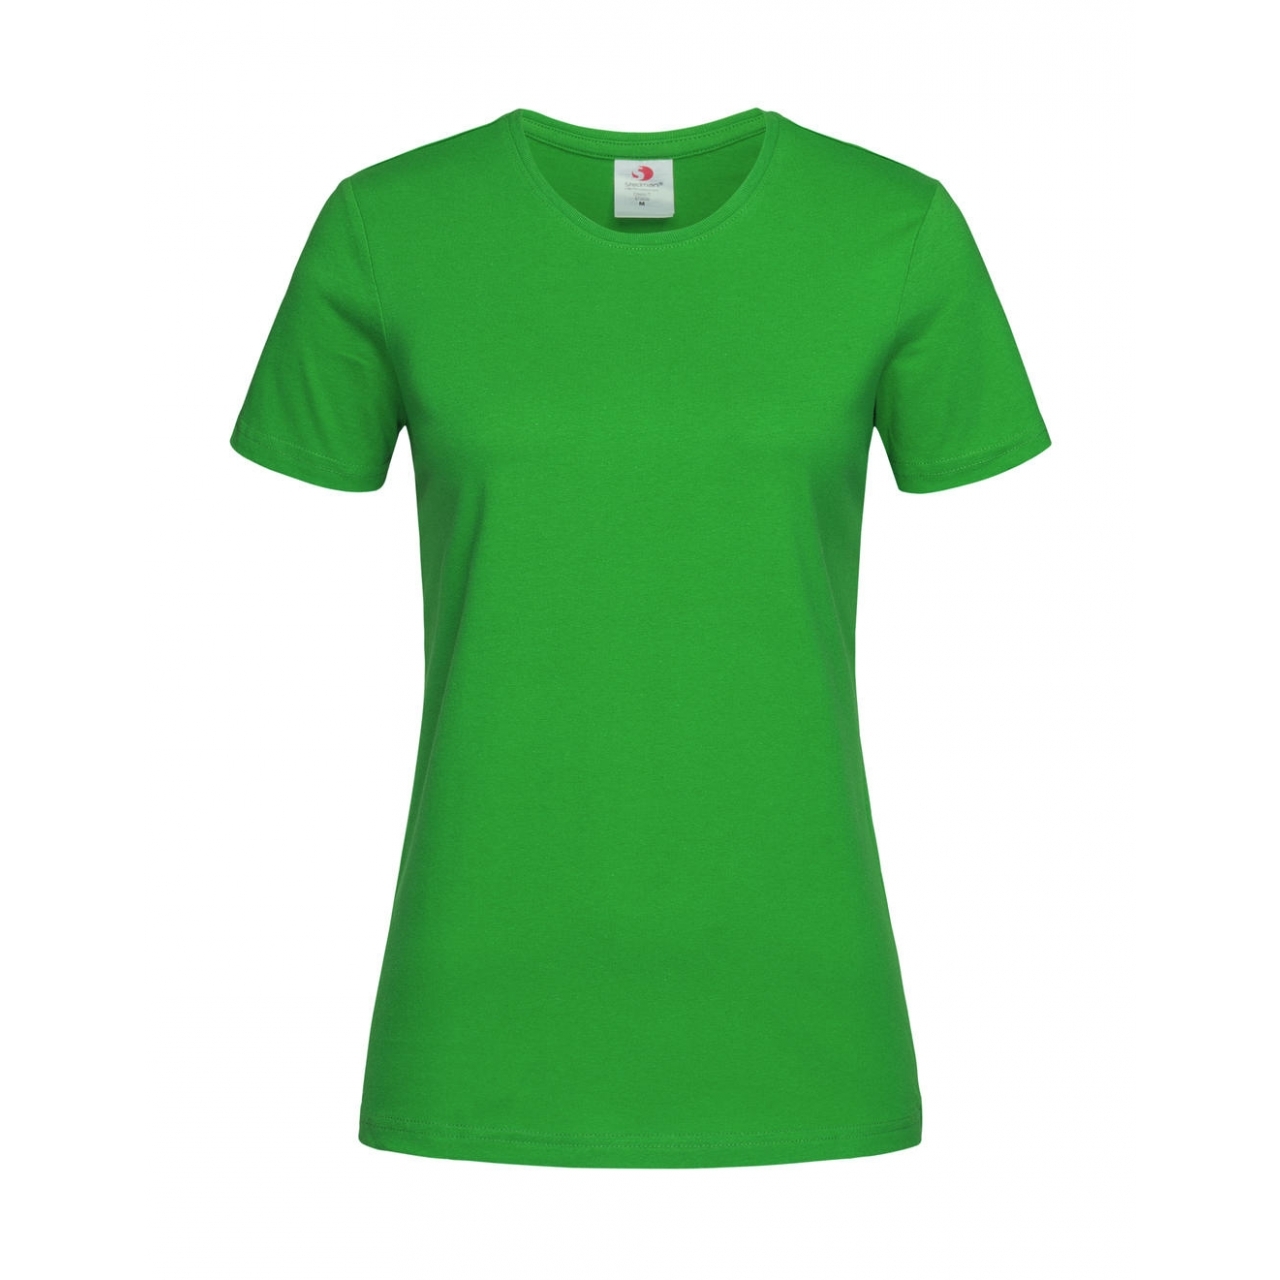 Tričko dámské Stedman Fitted s kulatým výstřihem - zelené, XL